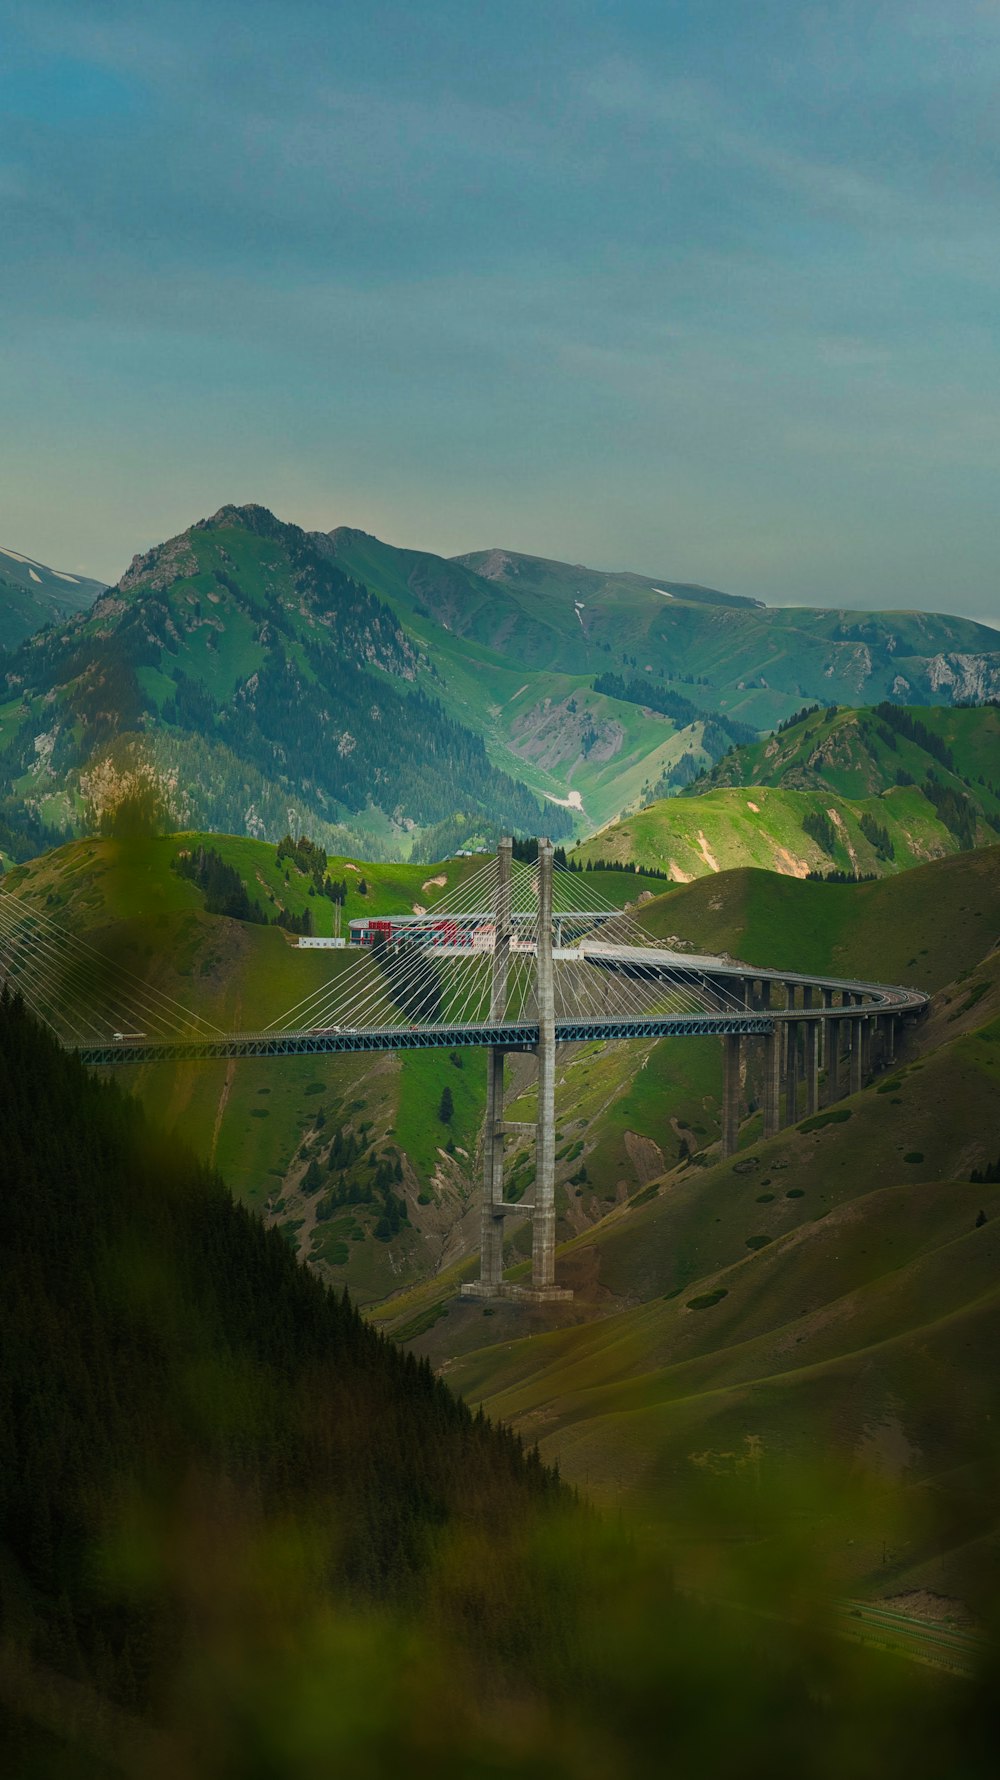 Un ponte nel mezzo di una valle con le montagne sullo sfondo